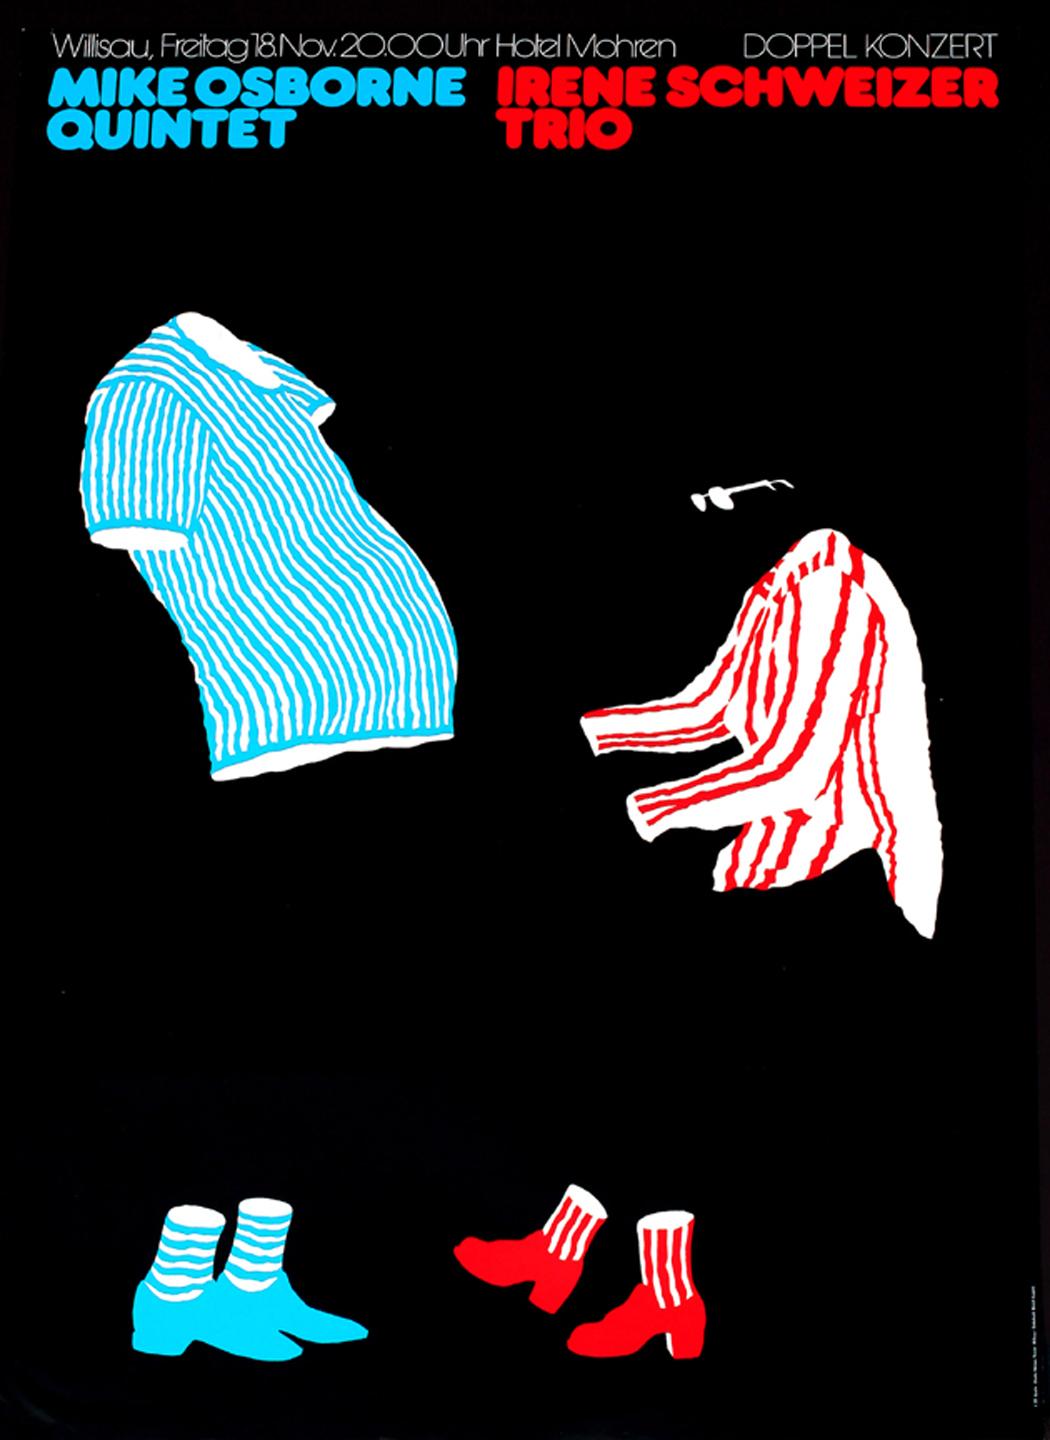 1977 jazz fest poster